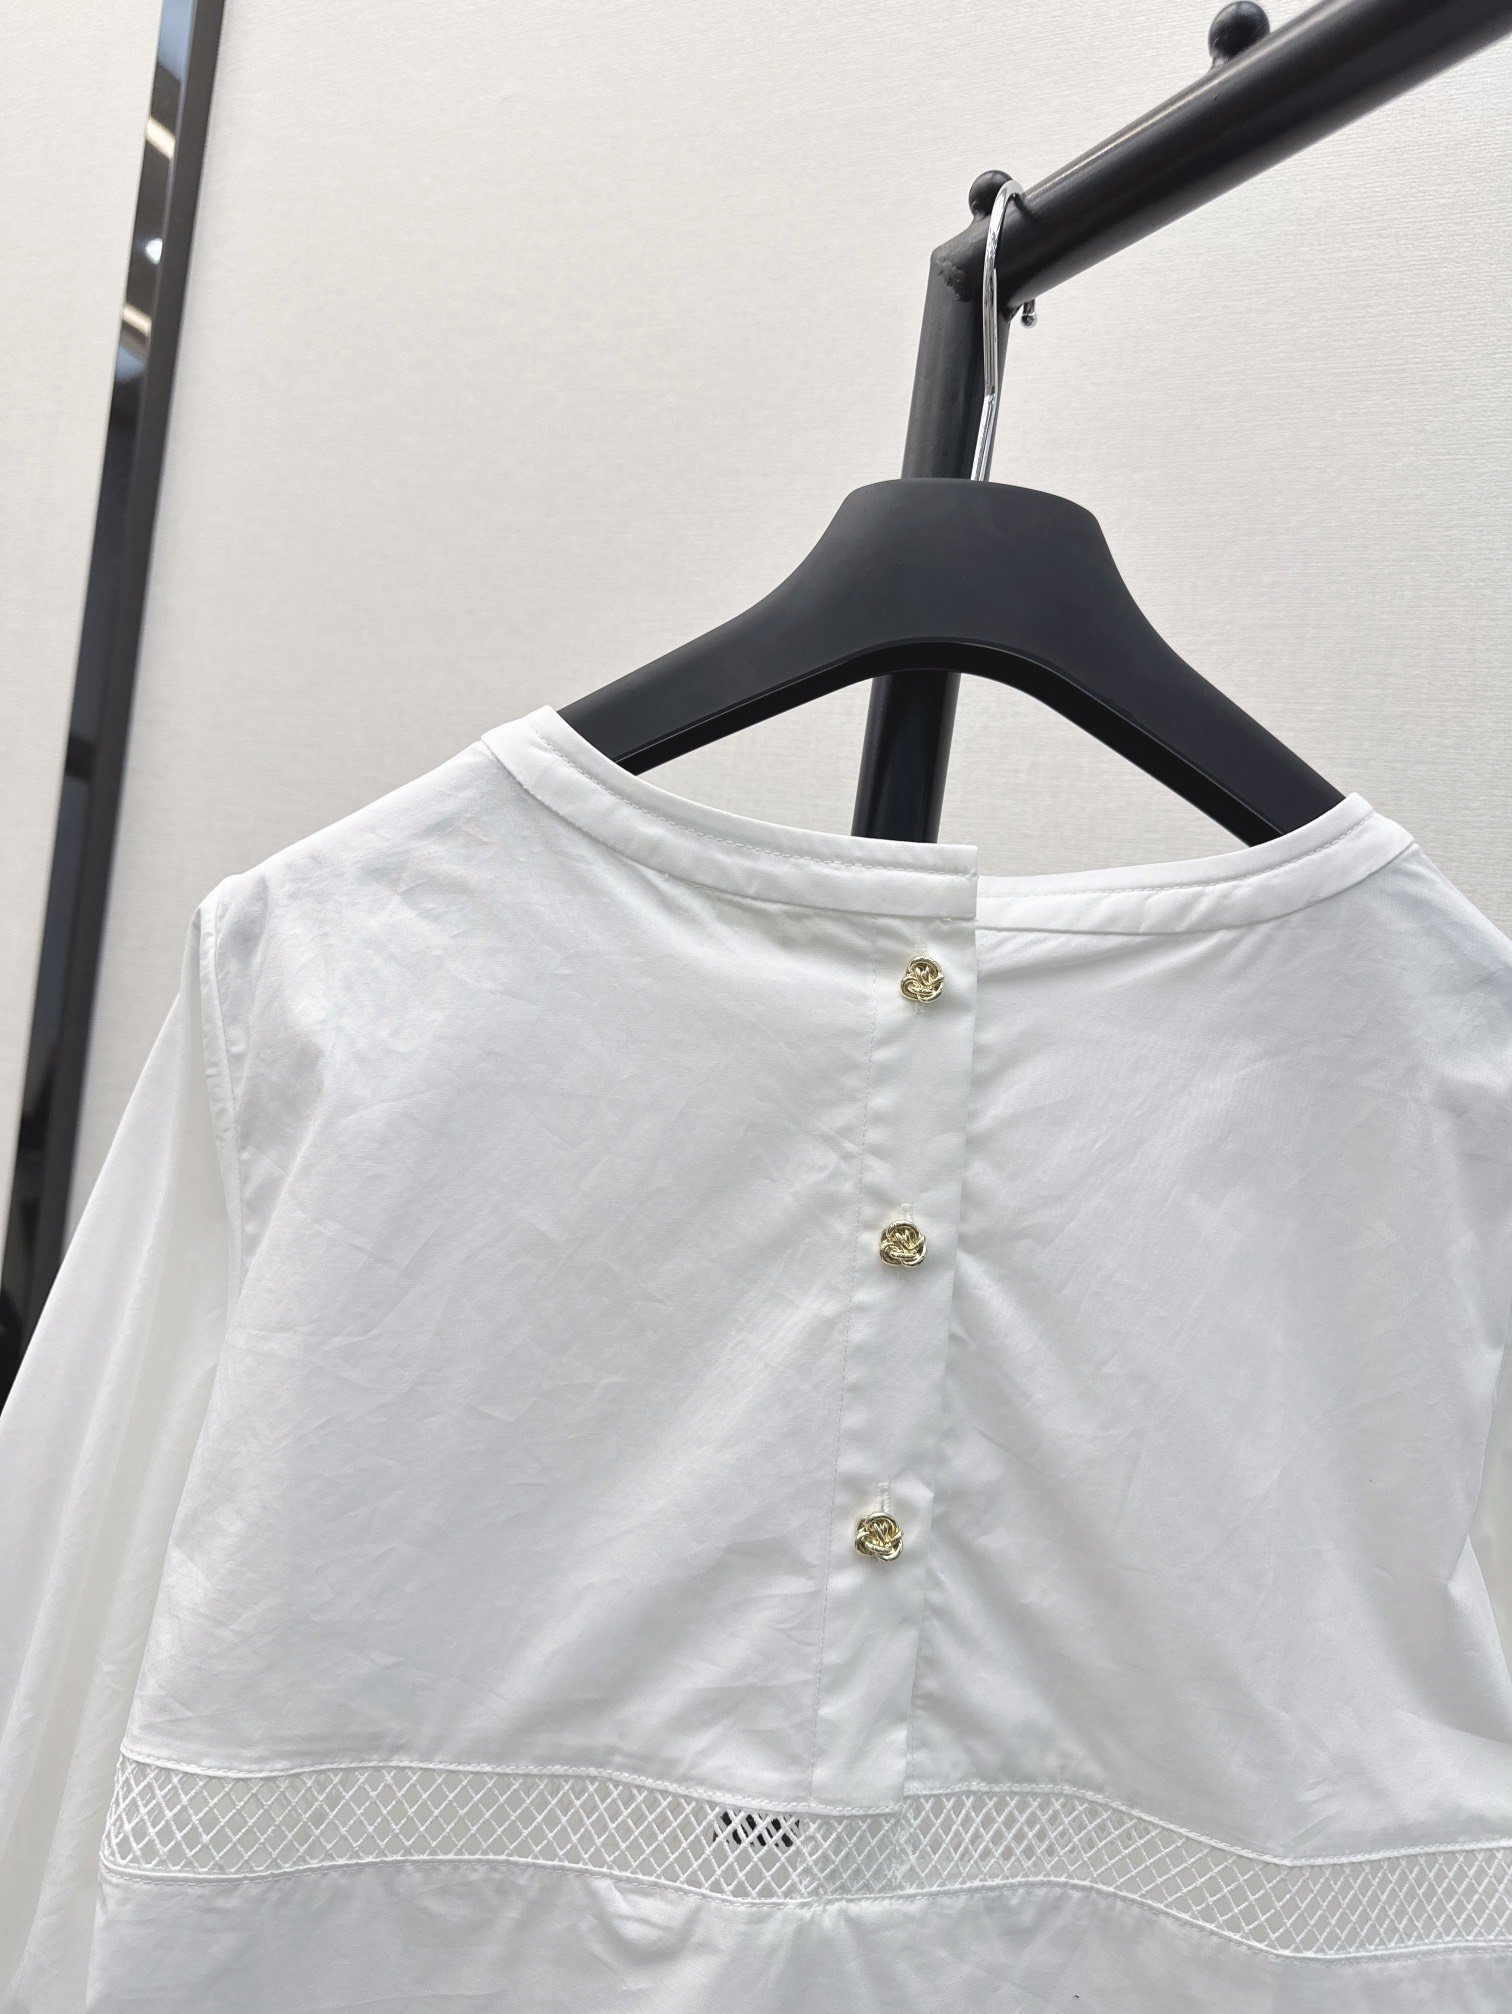 强烈推荐ChE24Ss春夏最新款七分袖圆领衬衫金扣点缀双面可穿H版型不挑身材气质优雅上身美的不要不要的度